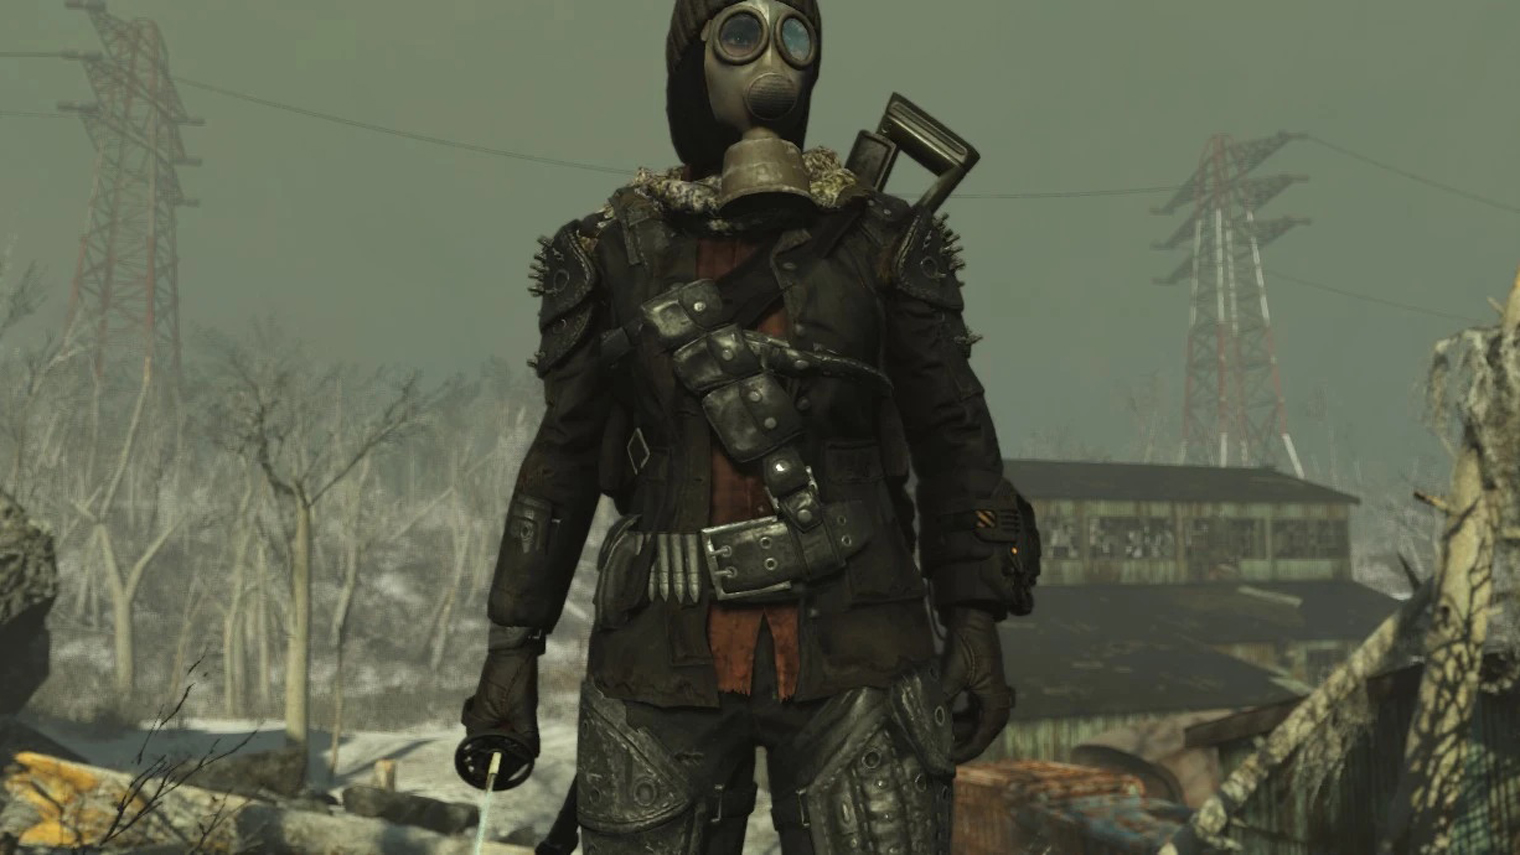 Fallout 4 разрешает носить только один головной убор, но мод Armorsmith Extended позволяет обойти это ограничение. Источник: nexusmods.com